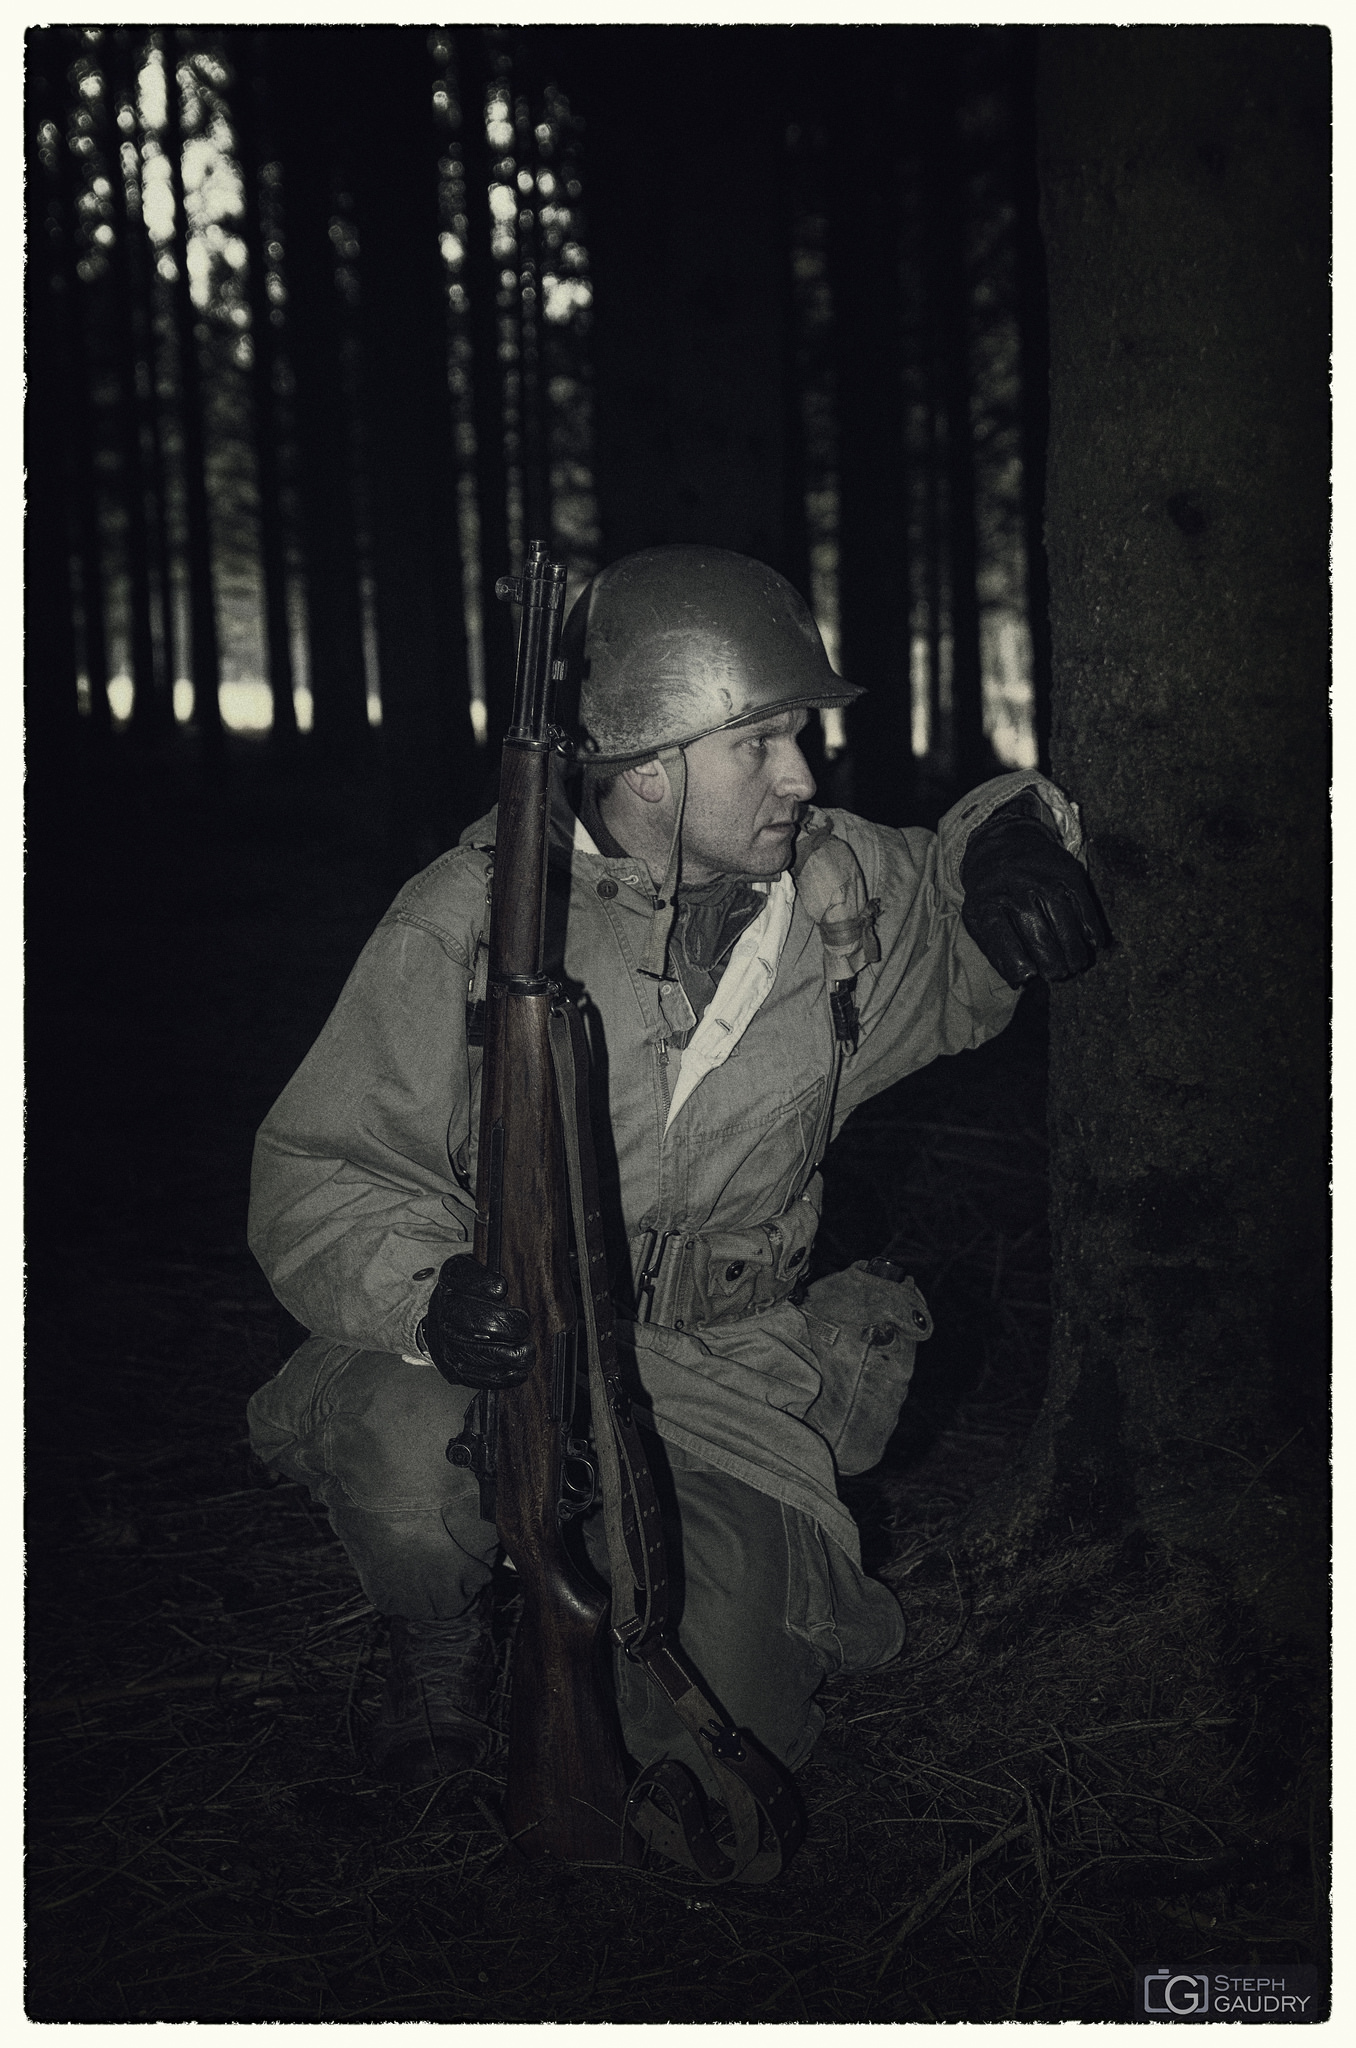 Bataille des Ardennes - Vintage / On attend les ordres